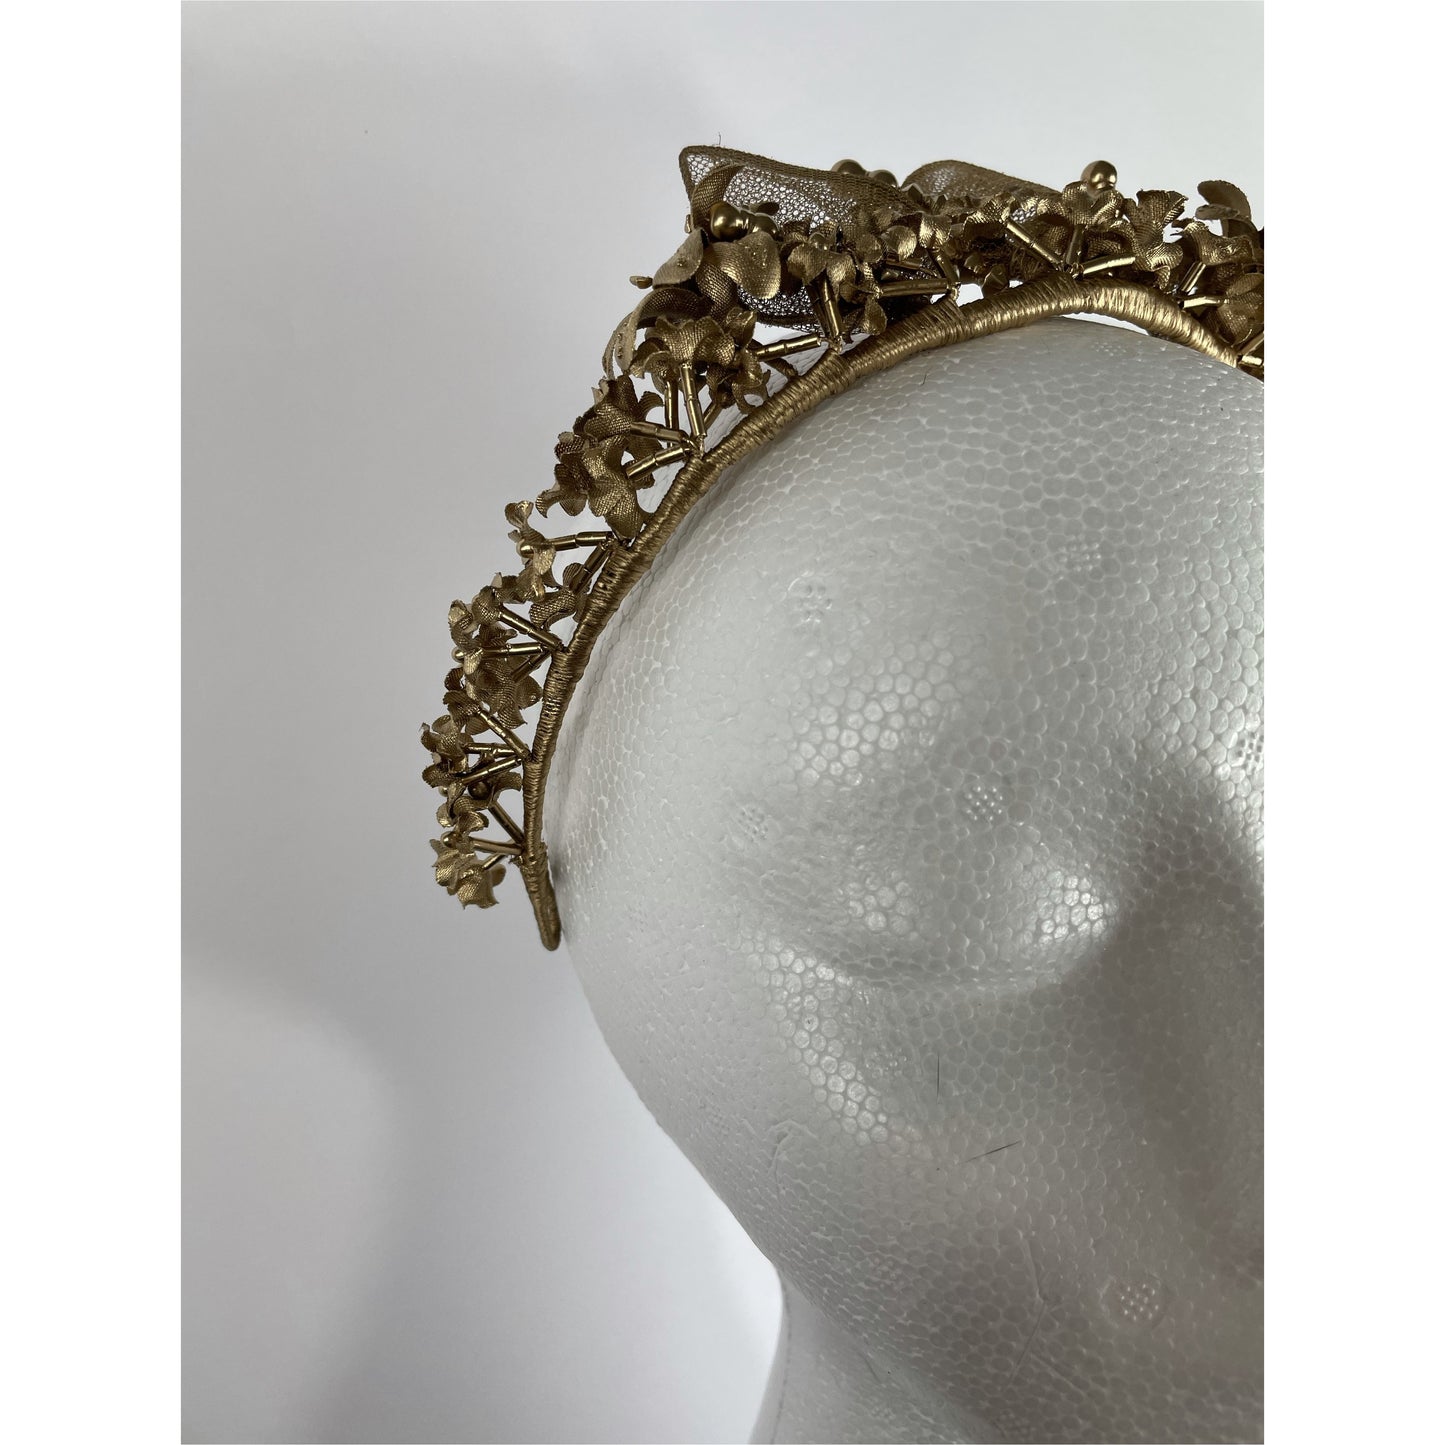 Greythwaite small gold crown